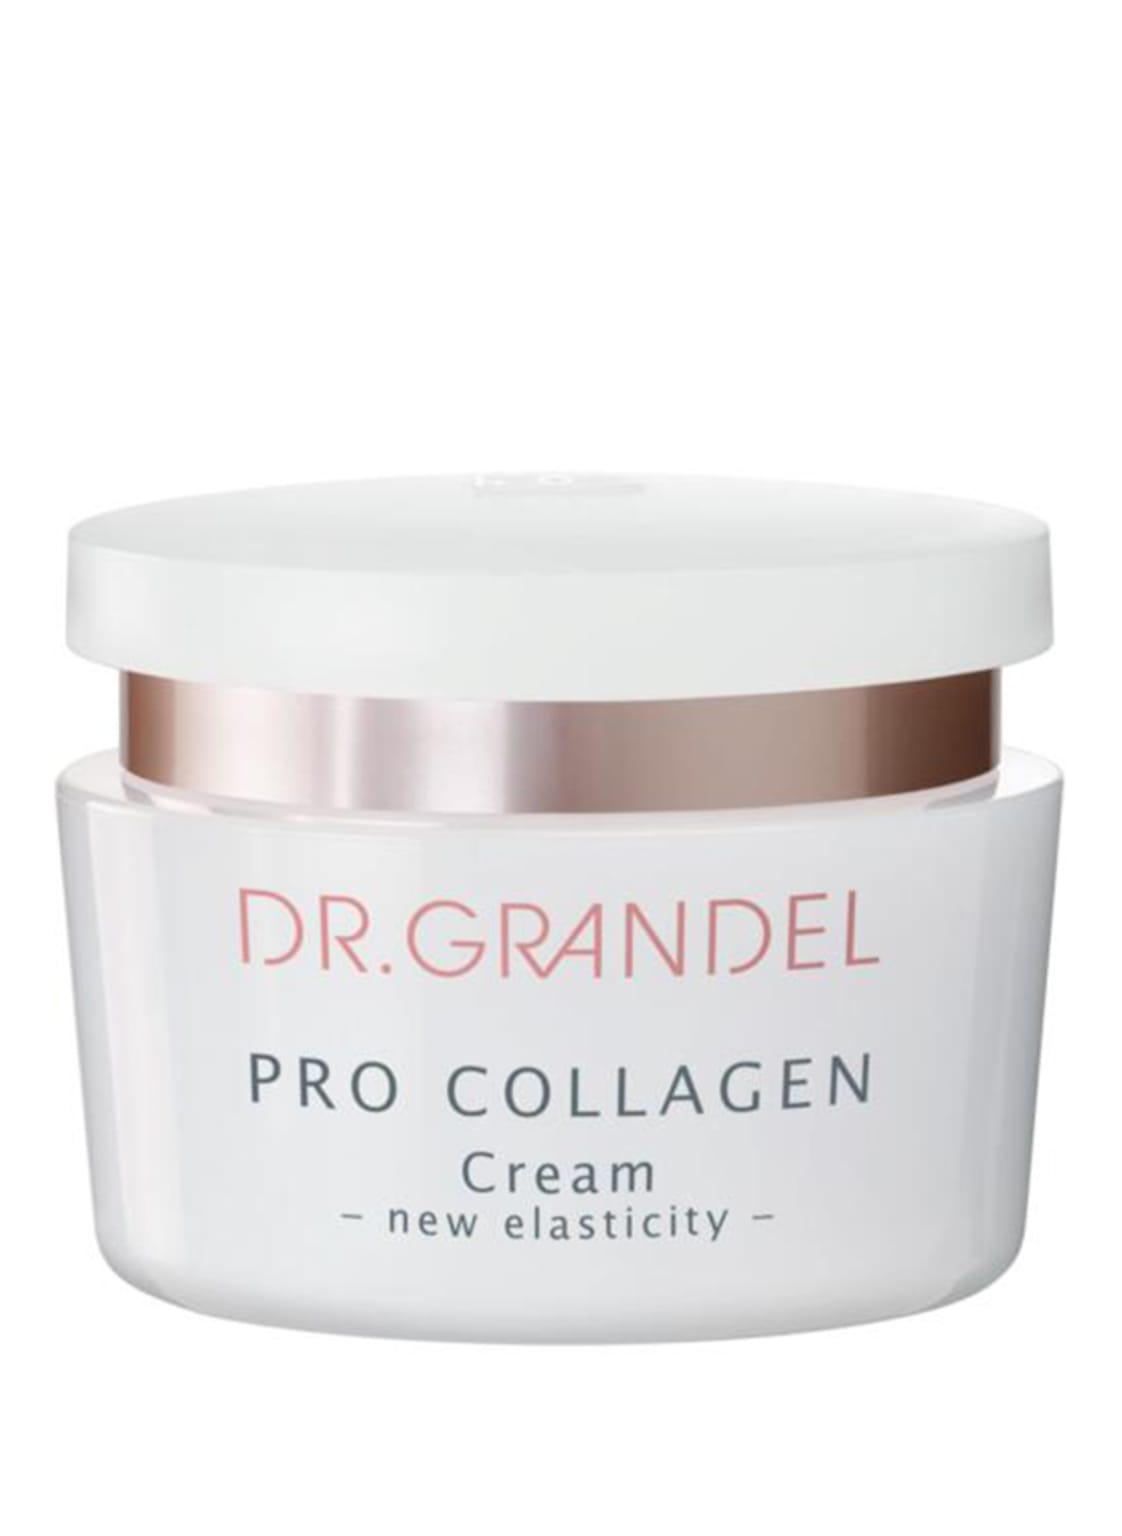 Dr. Grandel Pro Collagen Glättende 24 h Pflegecreme 50 ml von DR. GRANDEL